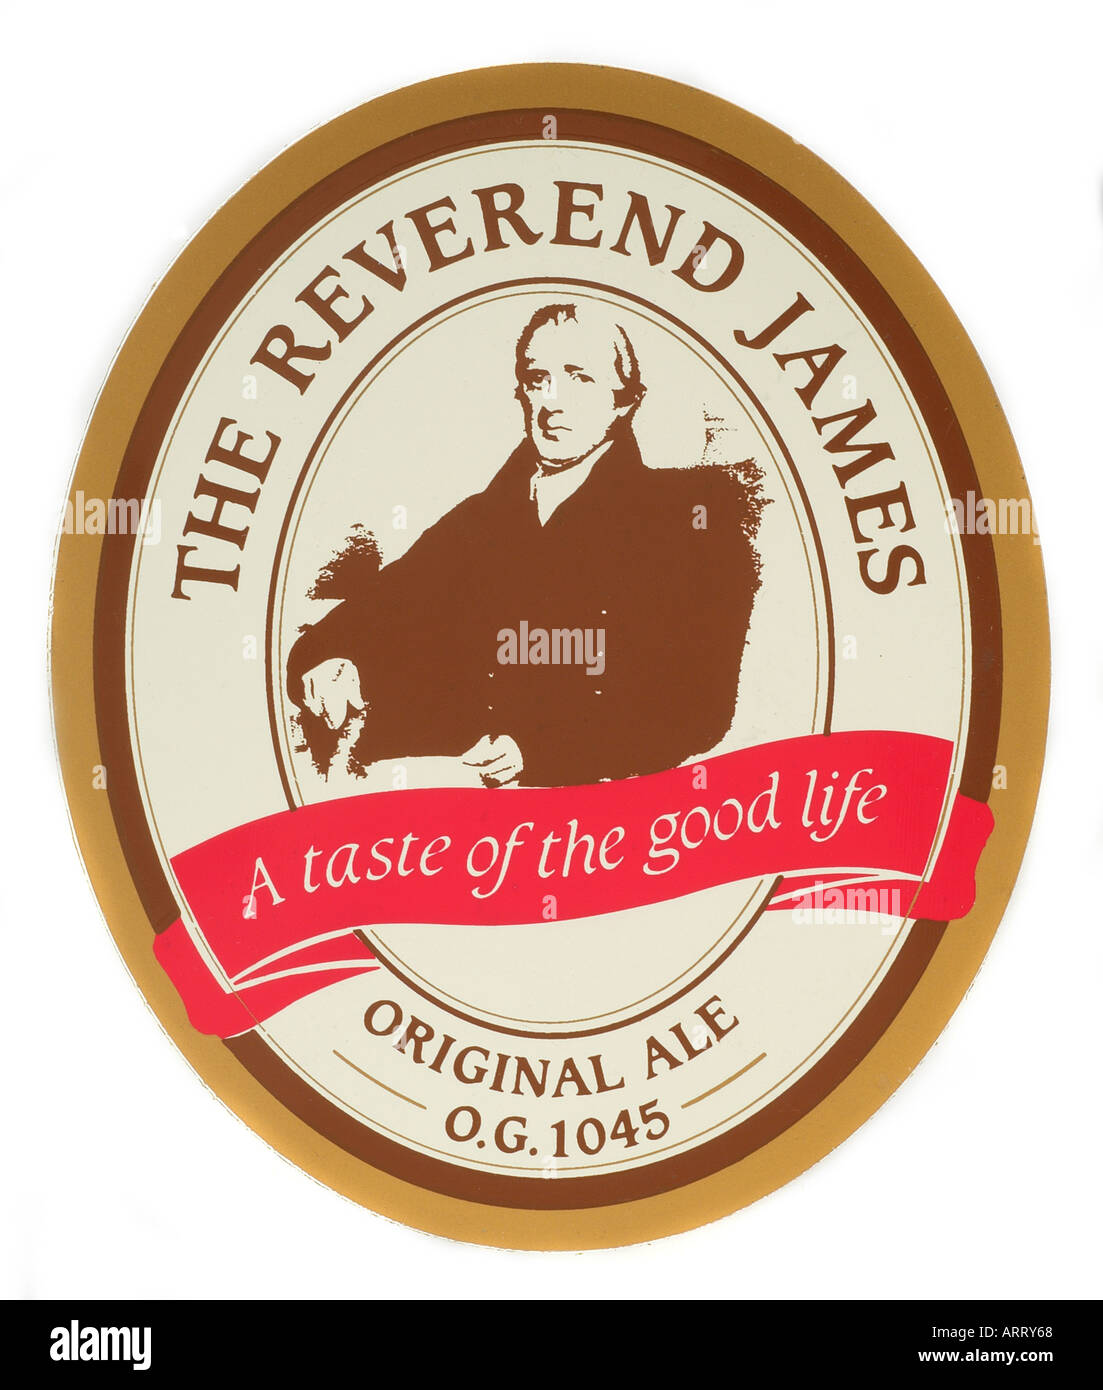 Zapfanlage beschriften England UK United Kingdom GB Great Britain der Reverend James einen Vorgeschmack auf das gute Bier original Stockfoto